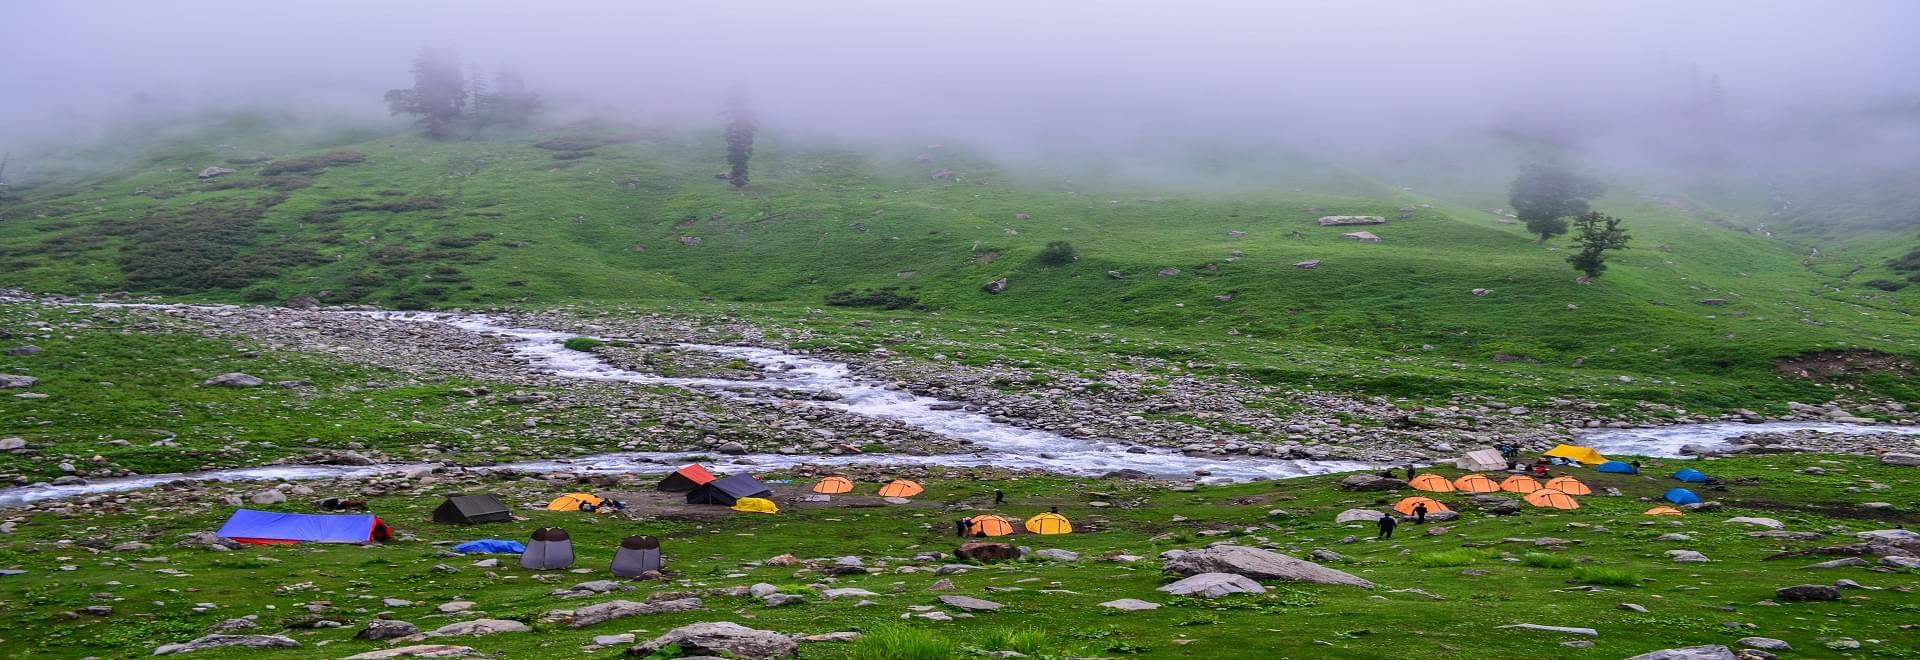 Camping Experiences Around Himachal Pradesh